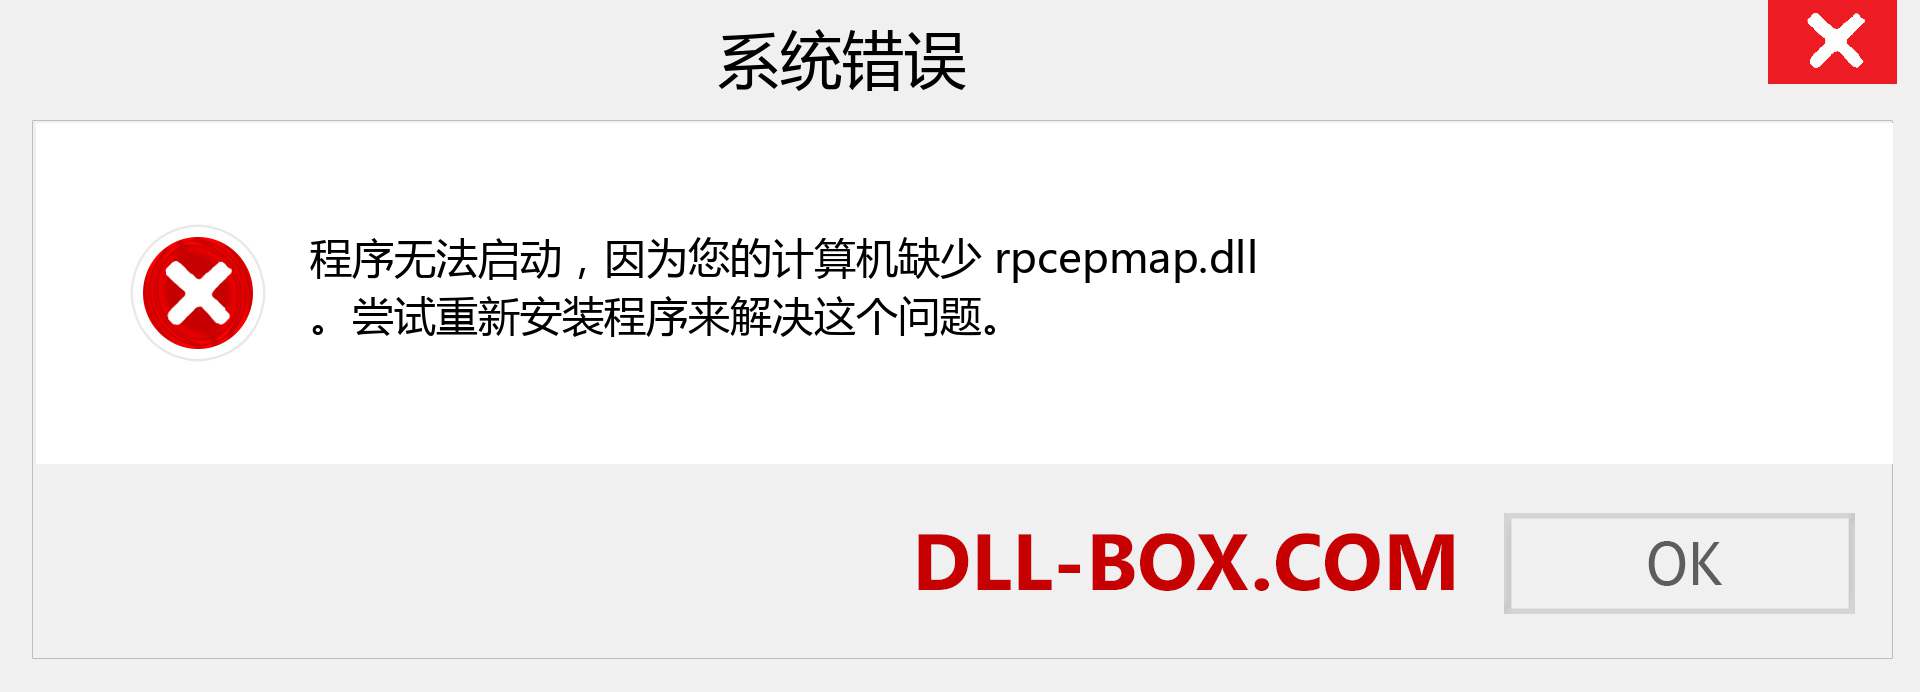 rpcepmap.dll 文件丢失？。 适用于 Windows 7、8、10 的下载 - 修复 Windows、照片、图像上的 rpcepmap dll 丢失错误